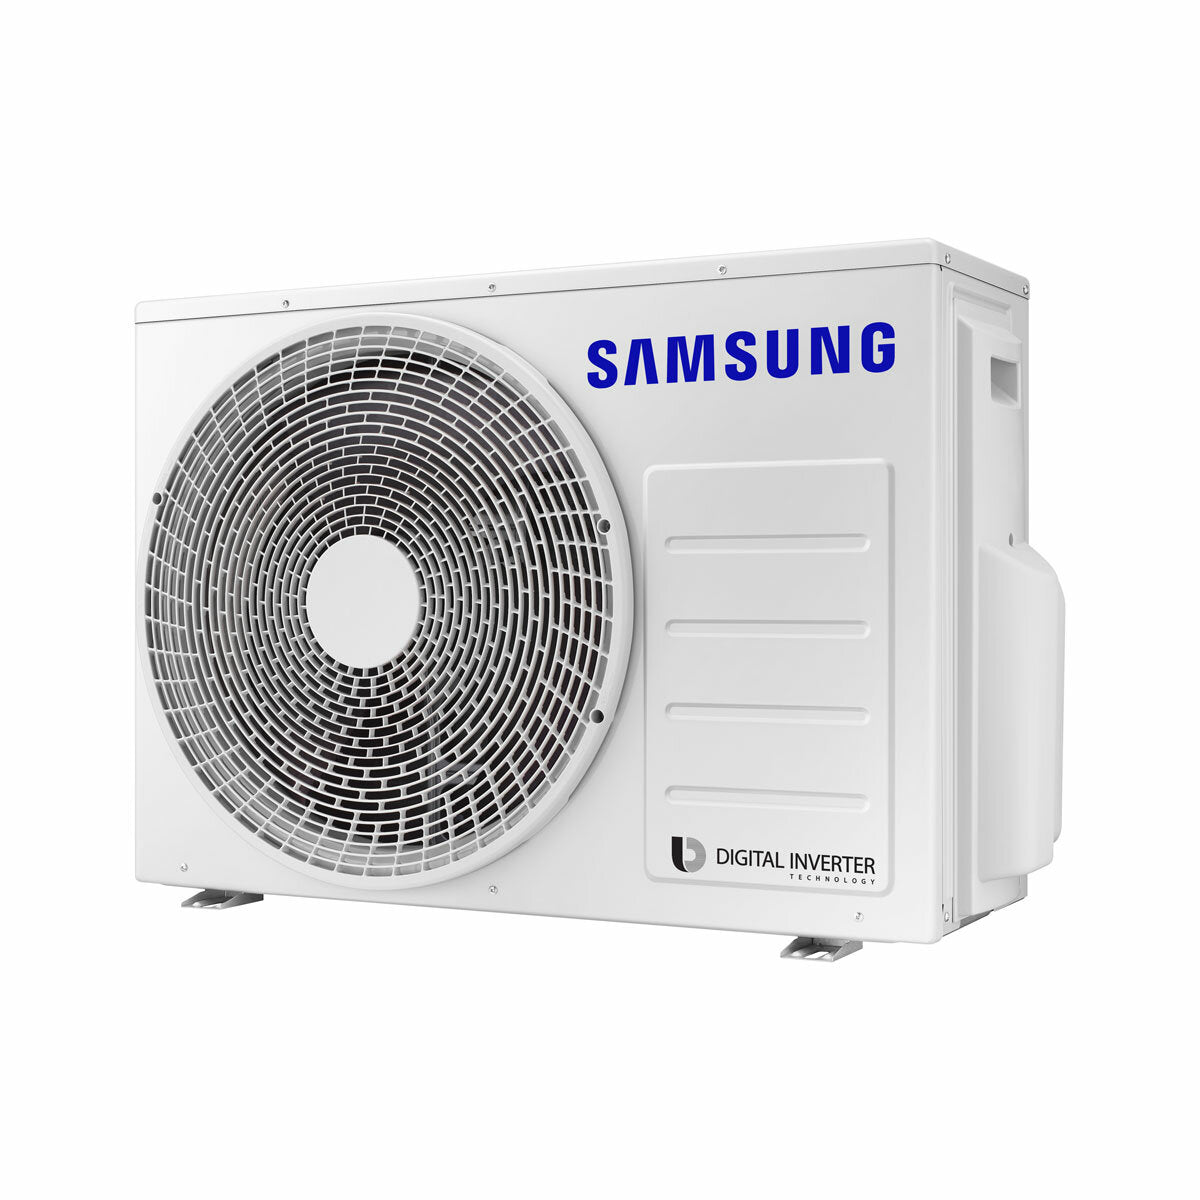 Samsung Climatiseur Windfree Essai 4 voies split 7000 + 9000 + 12000 BTU Inverter A+++ Unité extérieure 5,2 kW